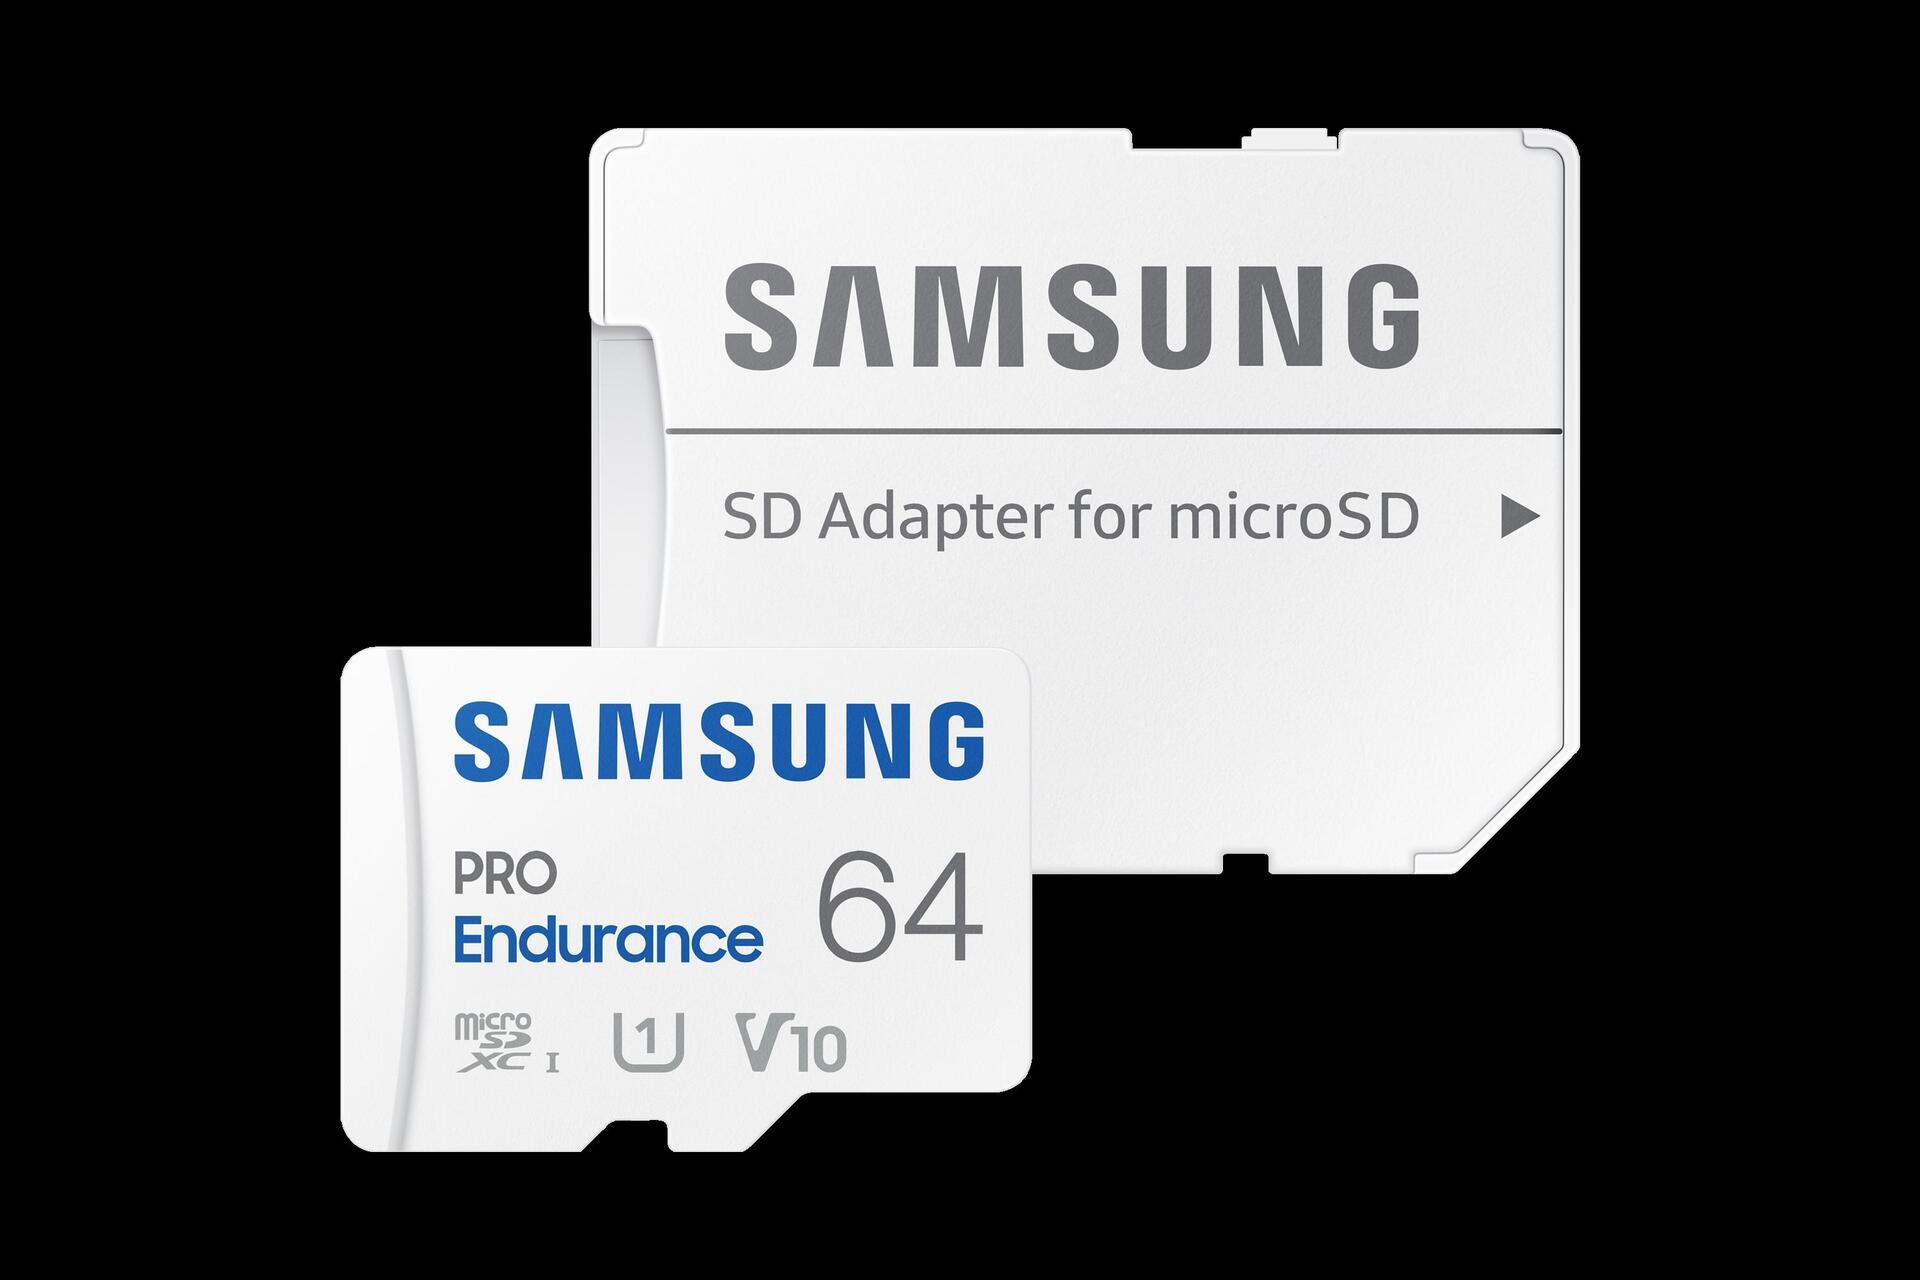 Samsung PRO Endurance MB-MJ64KA (MB-MJ64KA/EU)